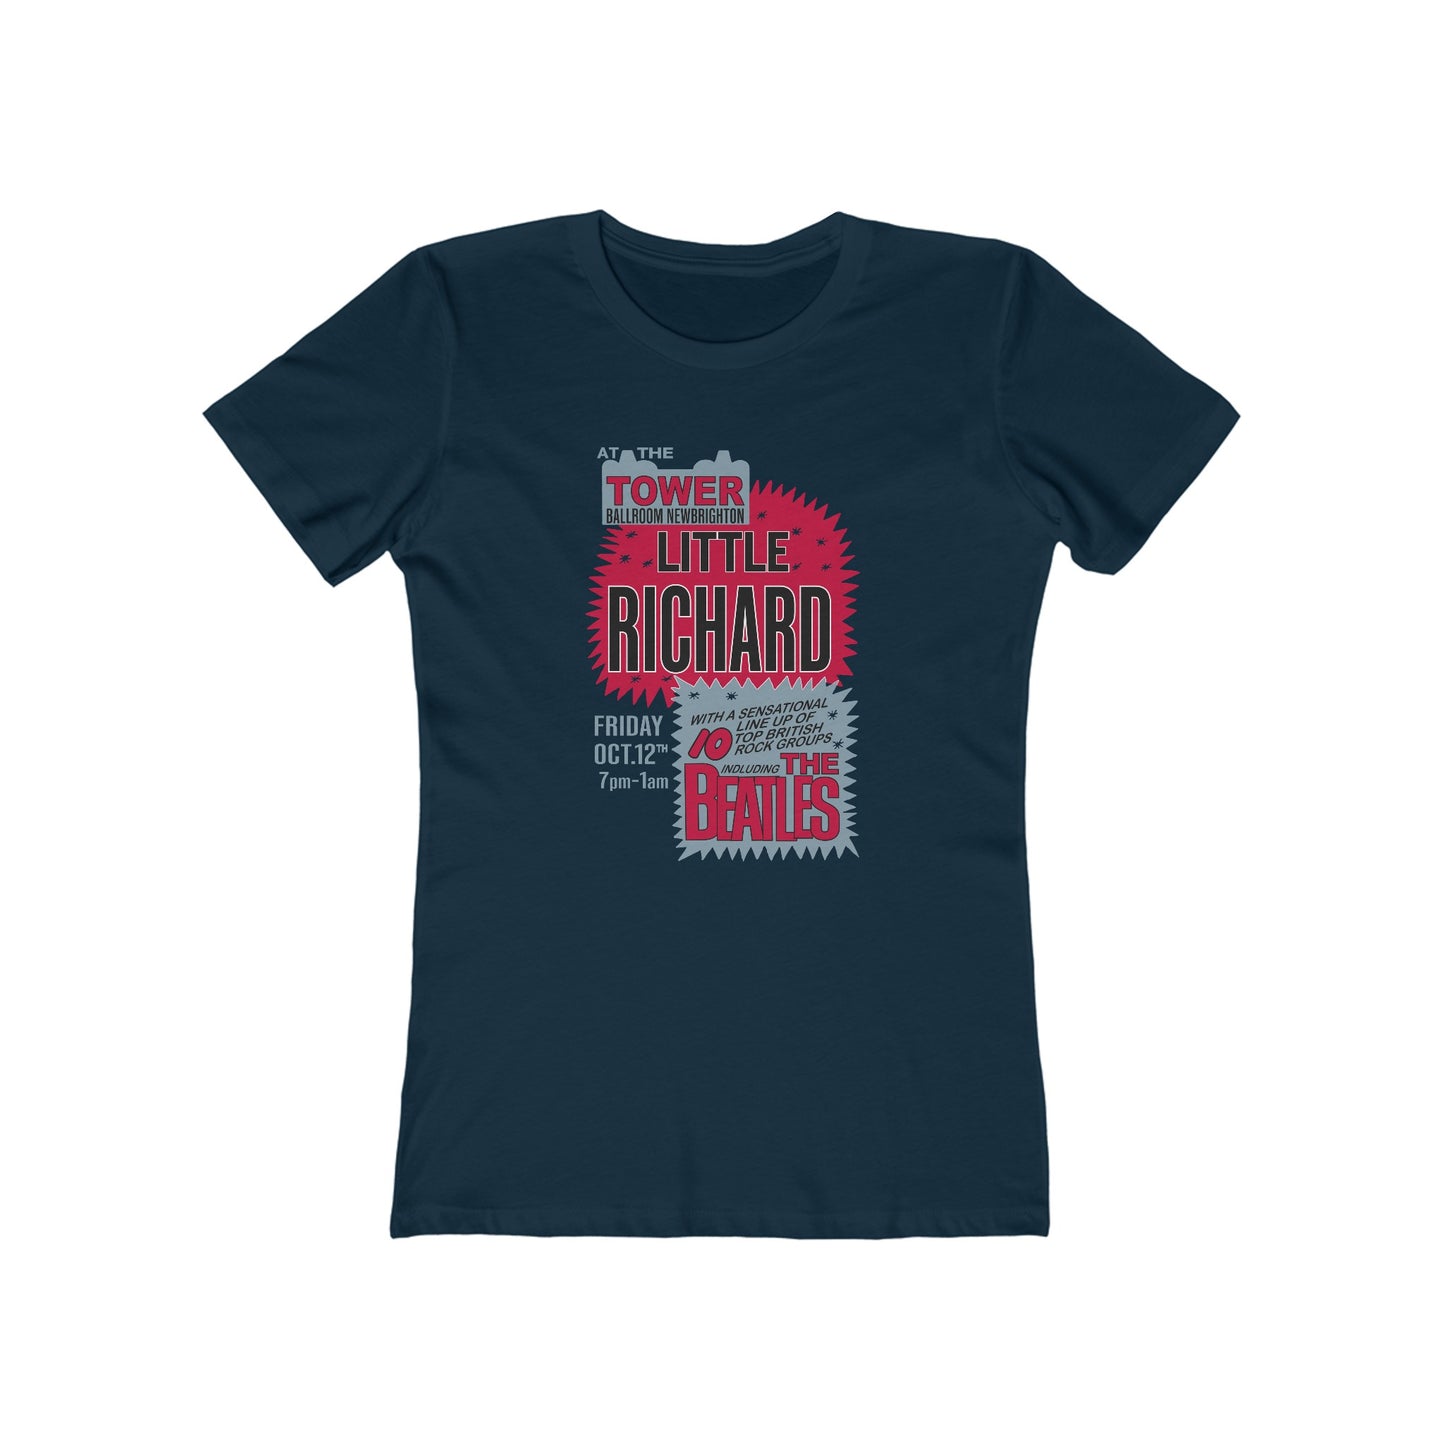 Little Richard & The Beatles - Women's T-Shirt